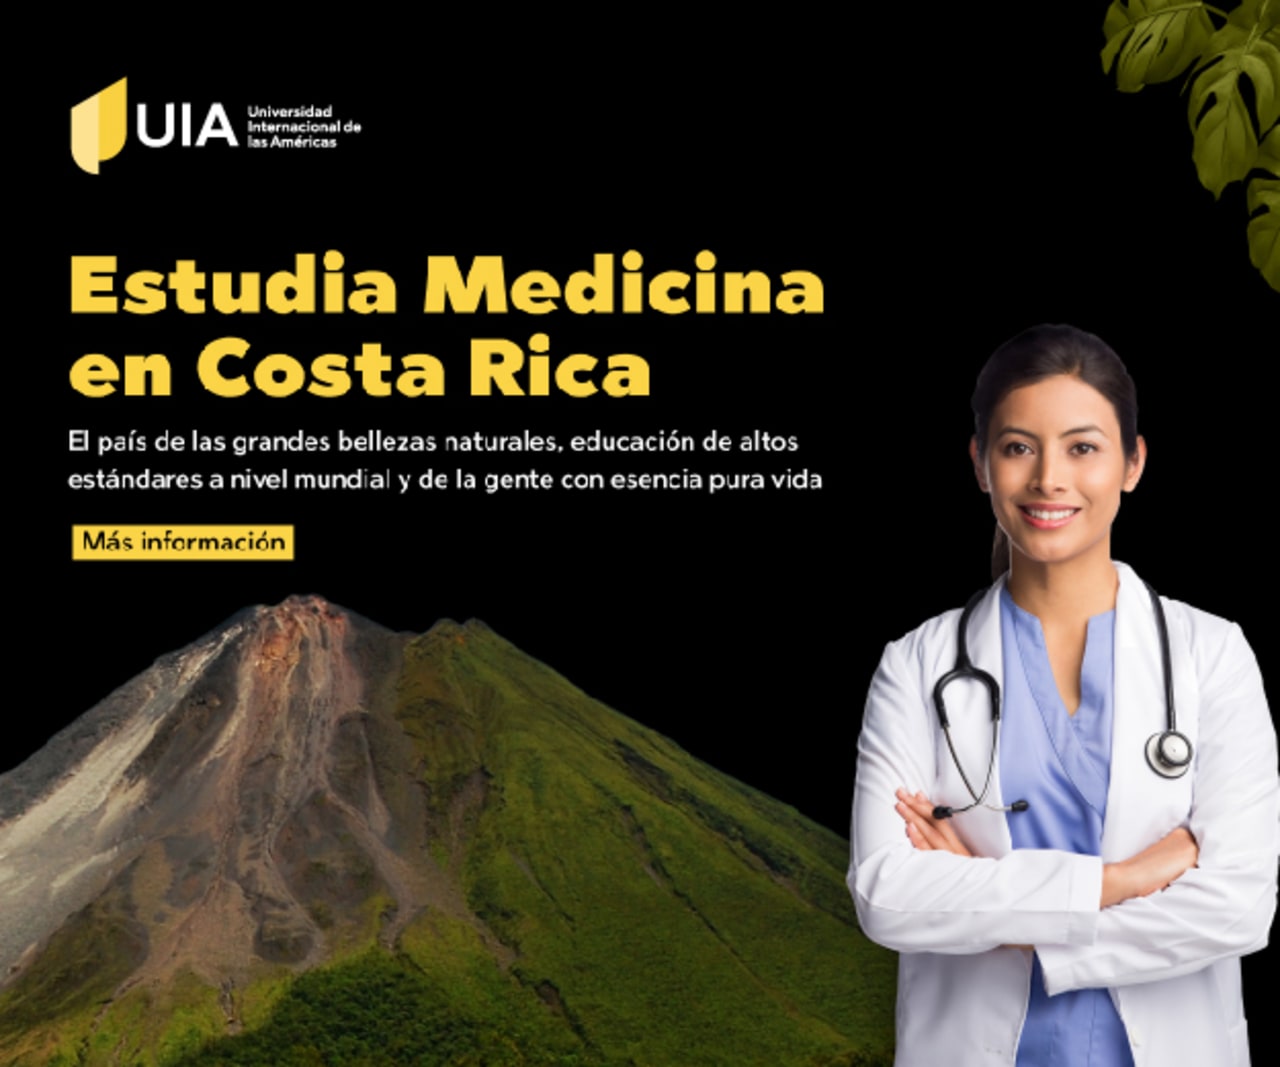 Universidad Internacional de las Américas STUDY MEDICINE IN COSTA RICA